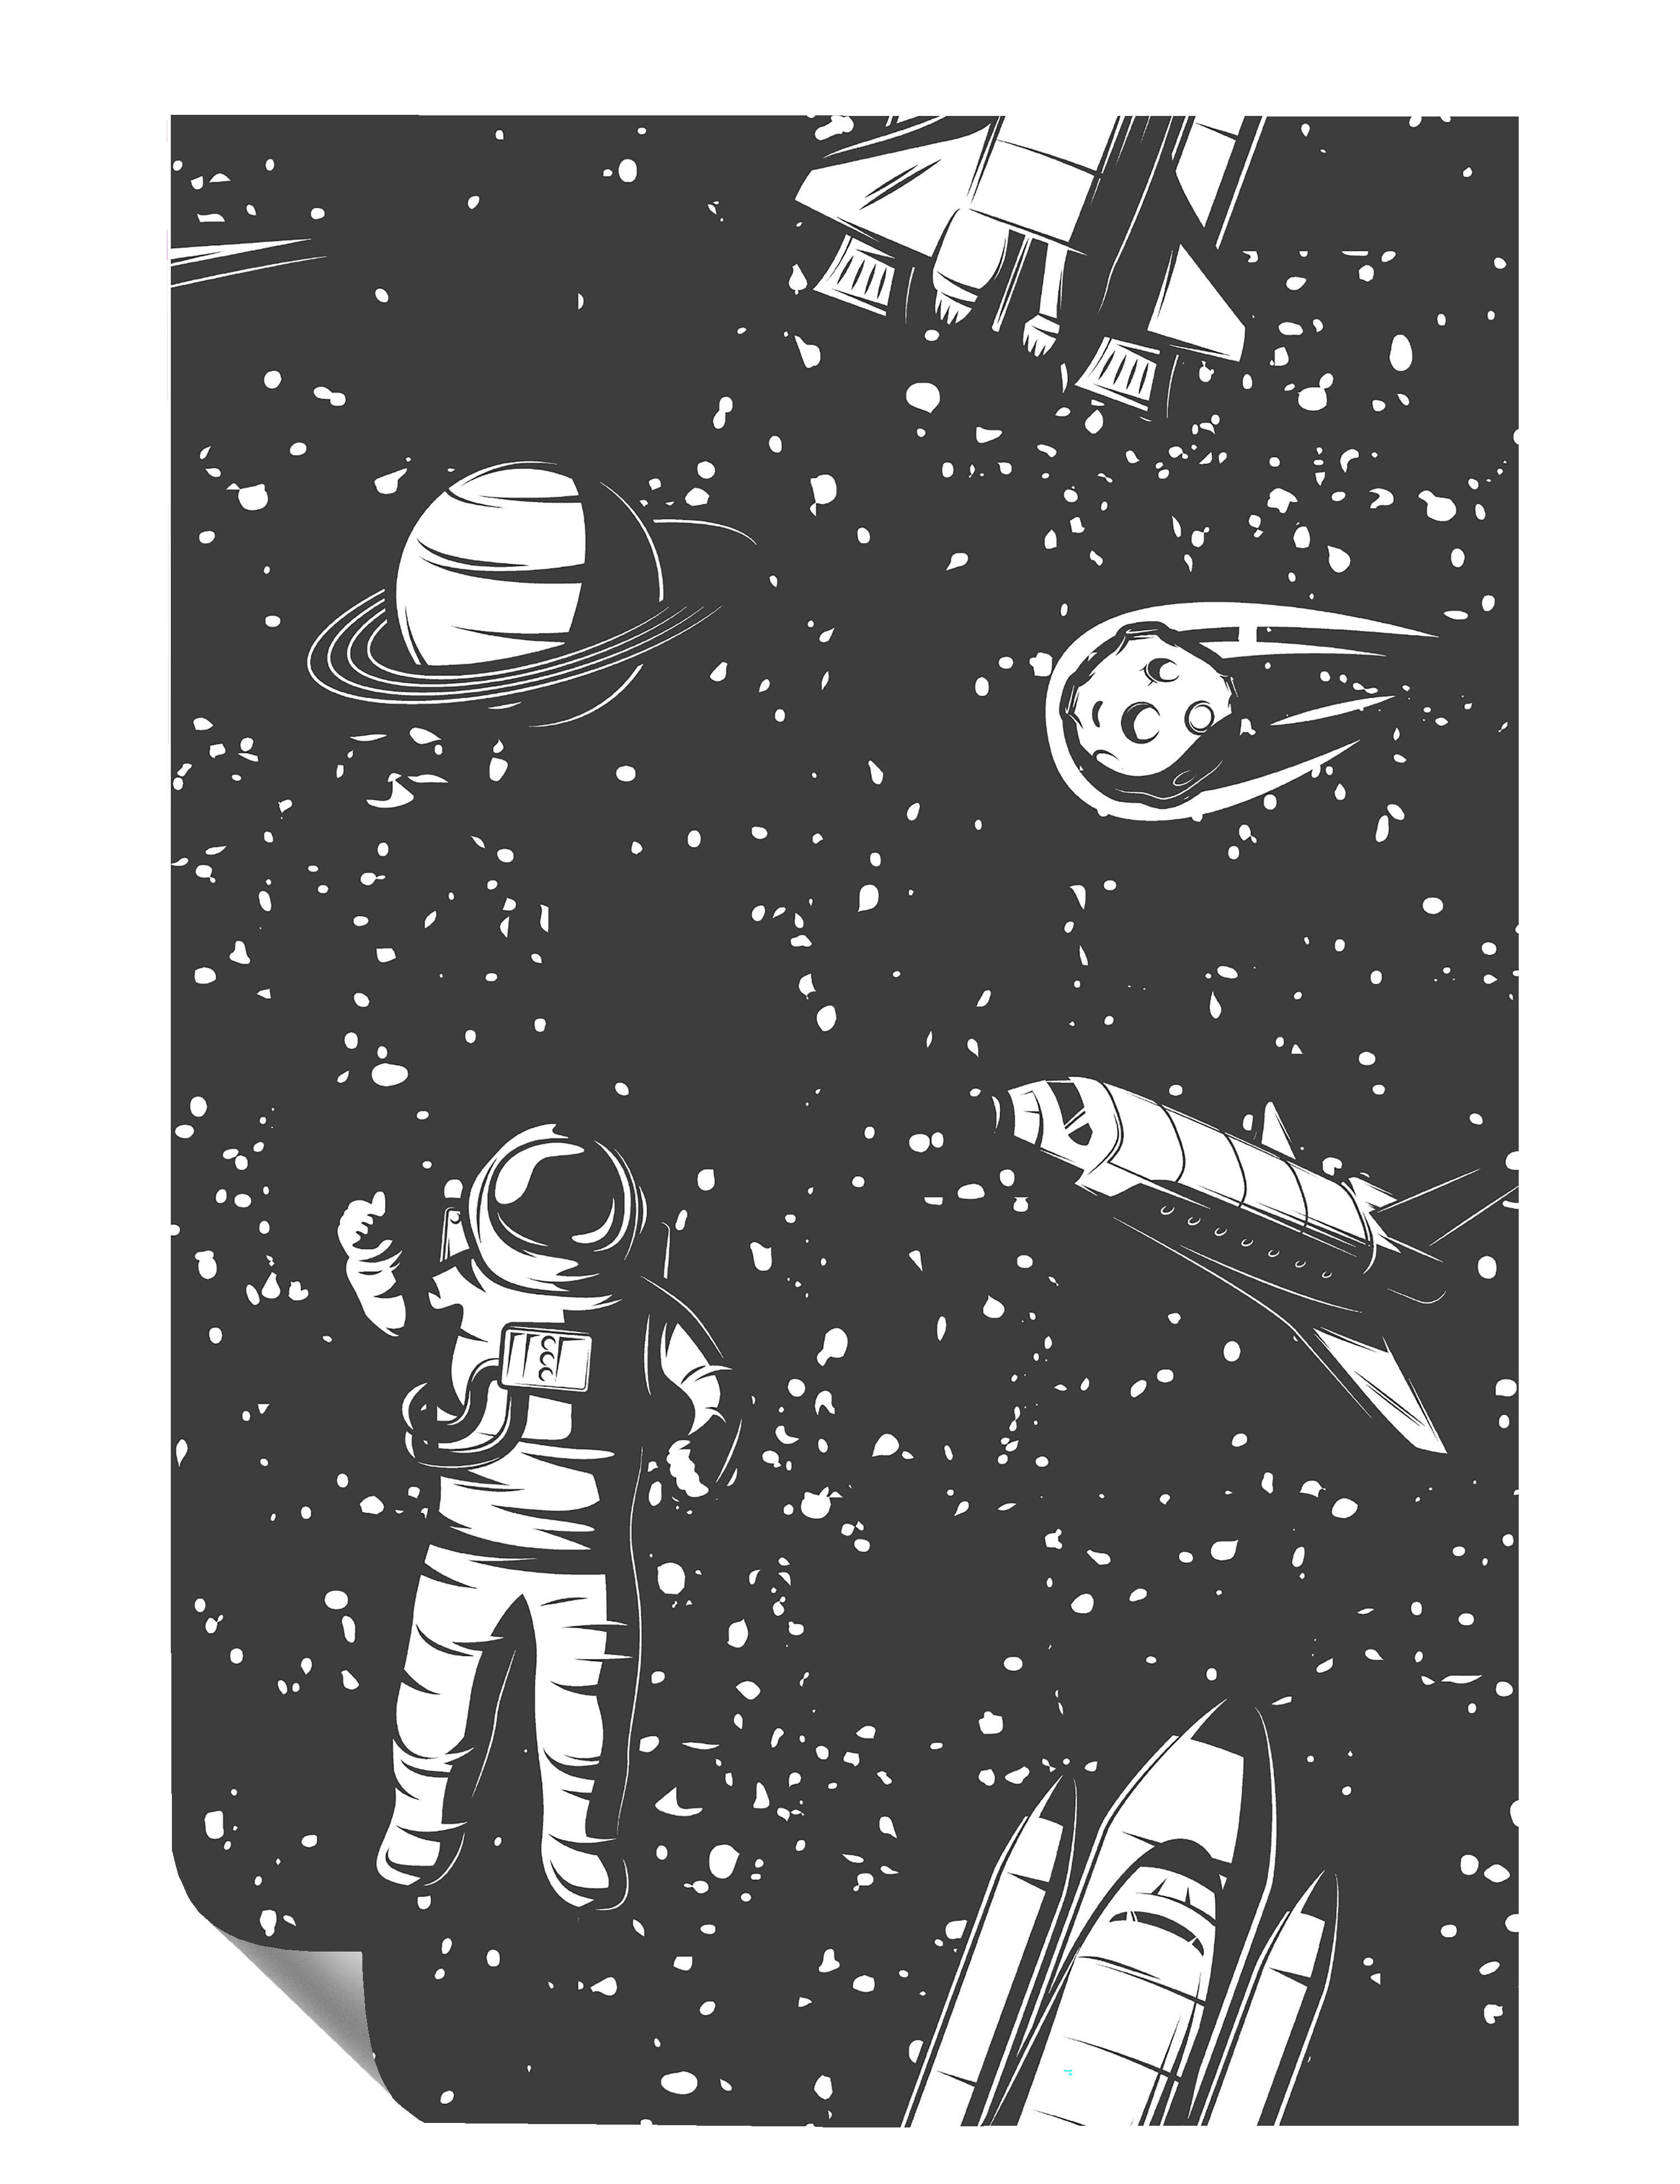 Astronaut Saturn Space Shuttle Komet Illustration Kunstdruck Poster P0443